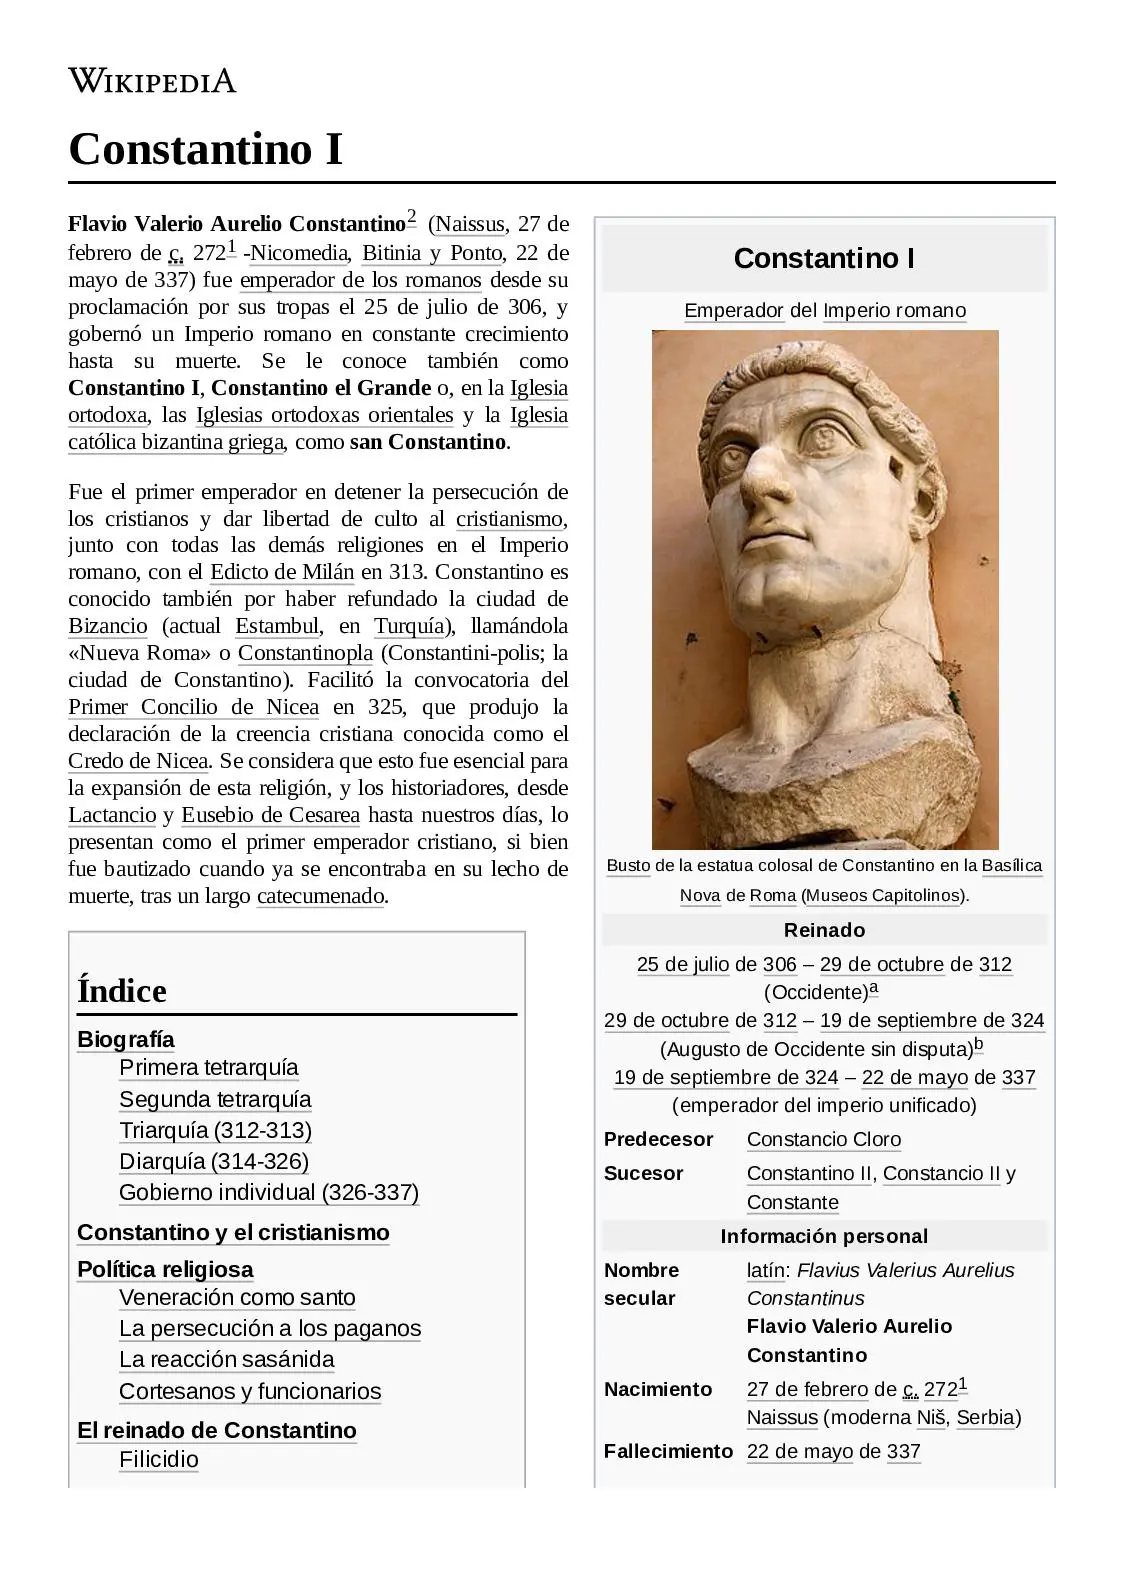 constantino emperador romano biografia resumida - Por qué Constantino se convirtio al cristianismo